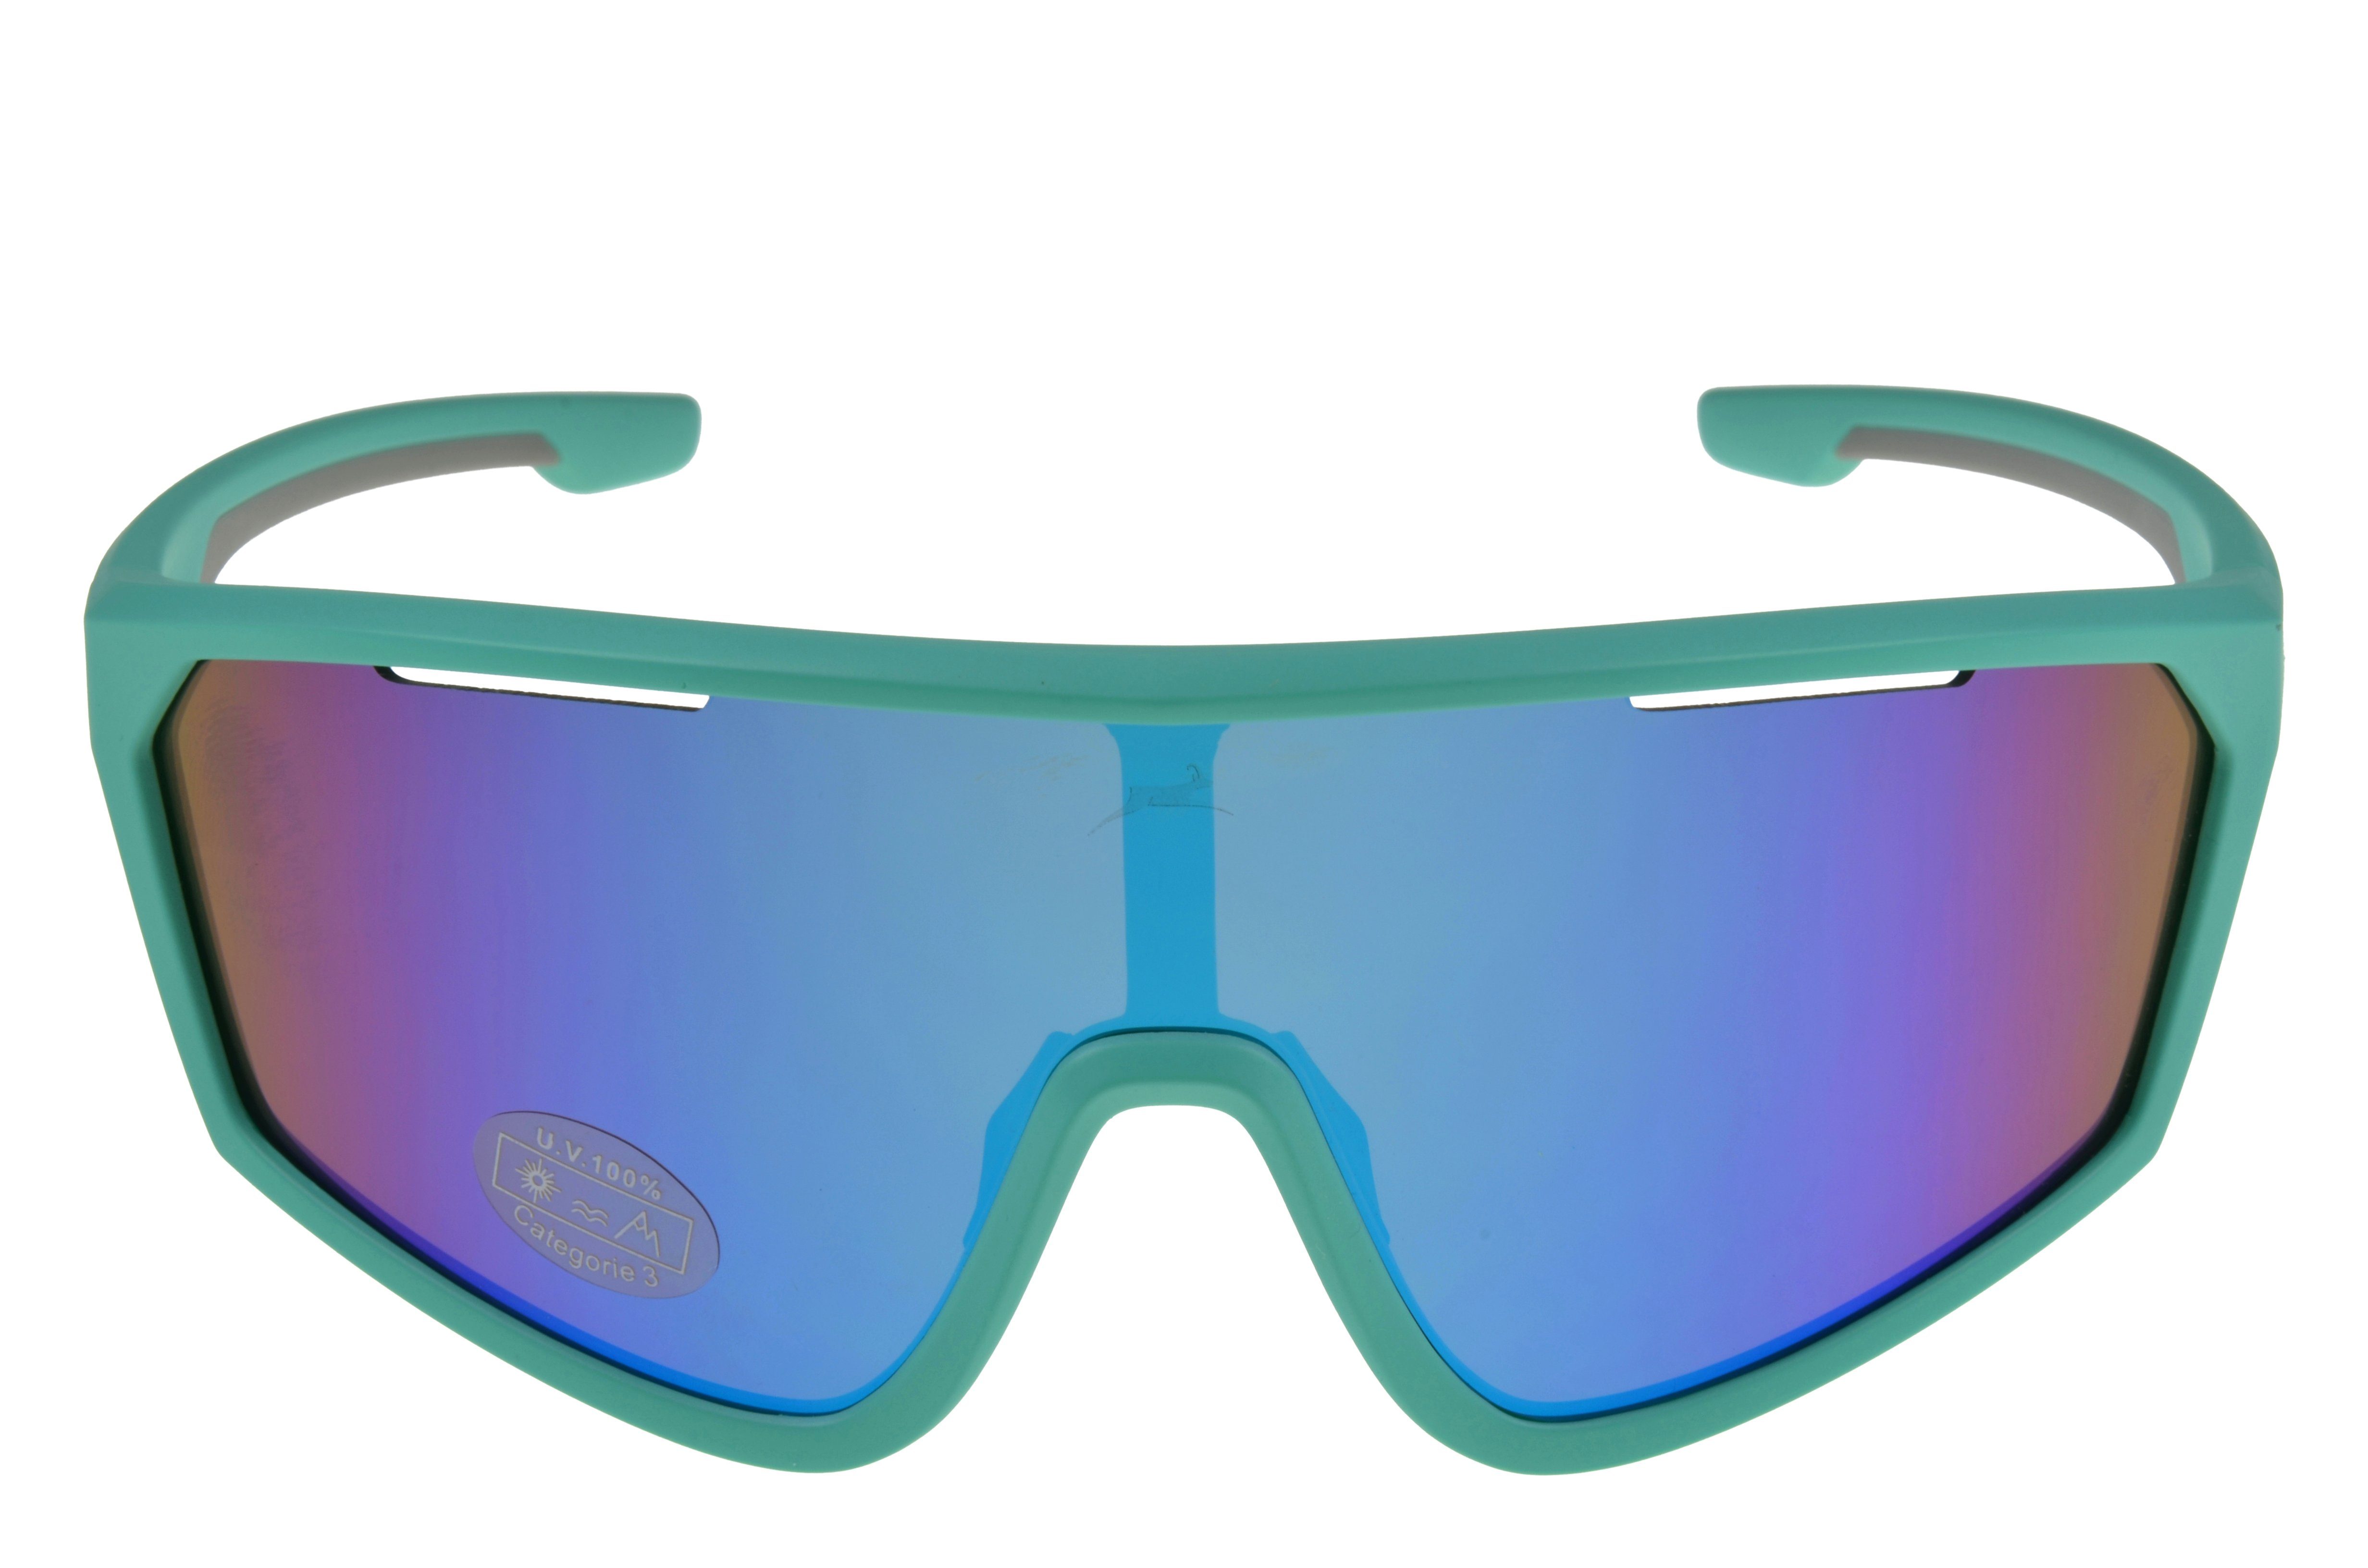 Gamswild Monoscheibensonnenbrille WS5838 Sonnenbrille Skibrille  Fahrradbrille Damen Herren Unisex TR90 tolles Design, grün, blau, weiß